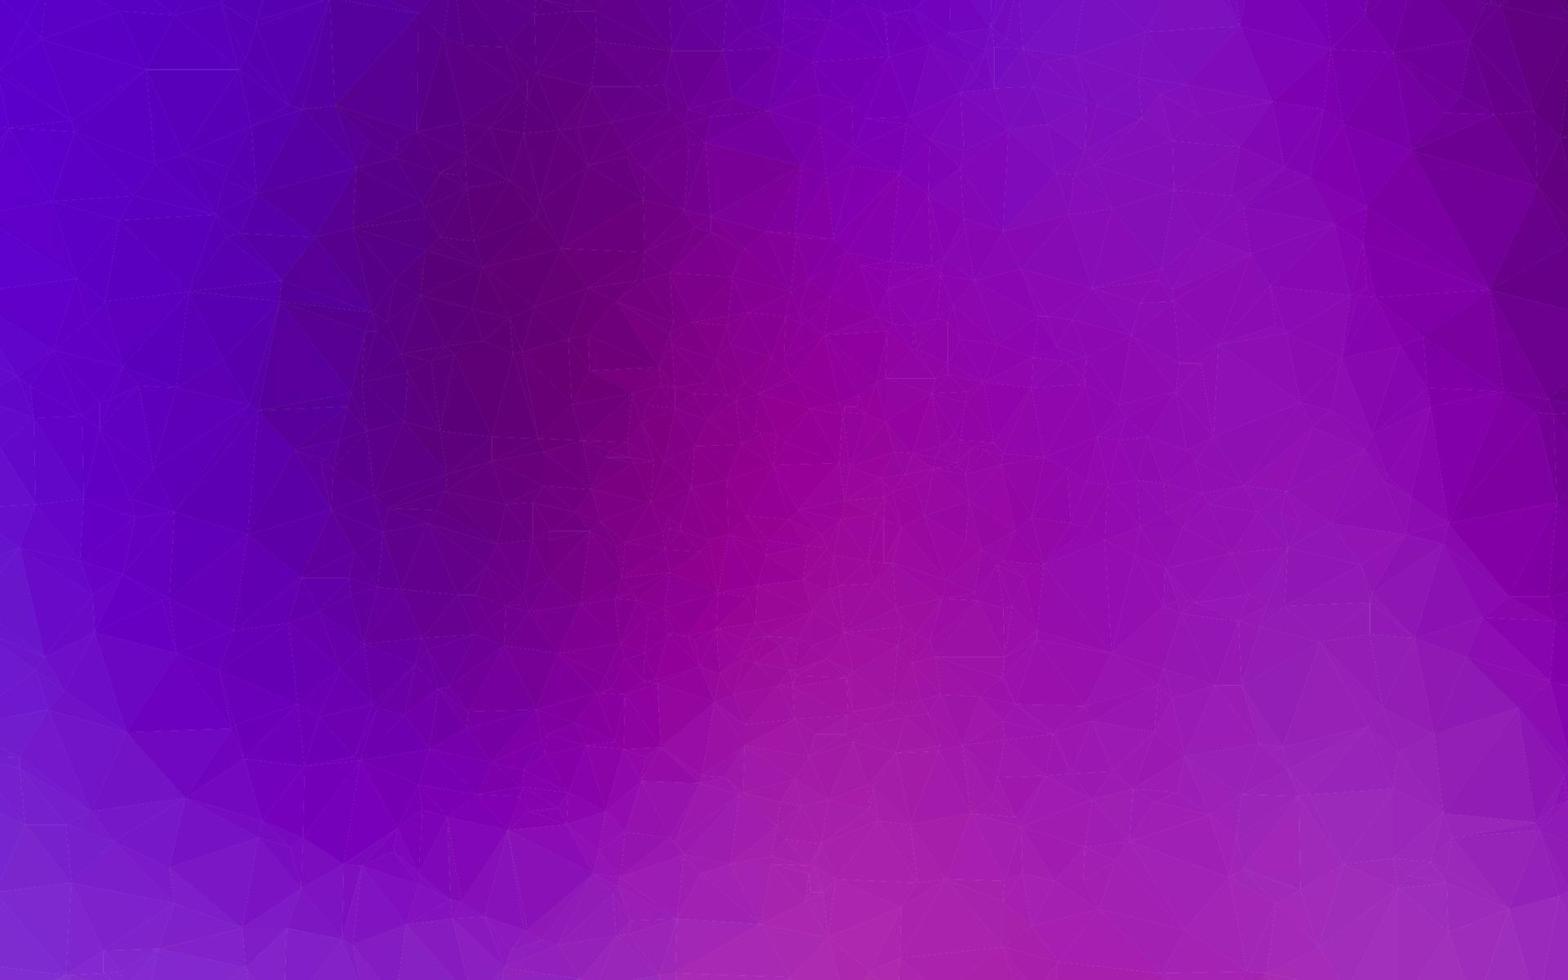 texture polygonale abstraite de vecteur violet clair.